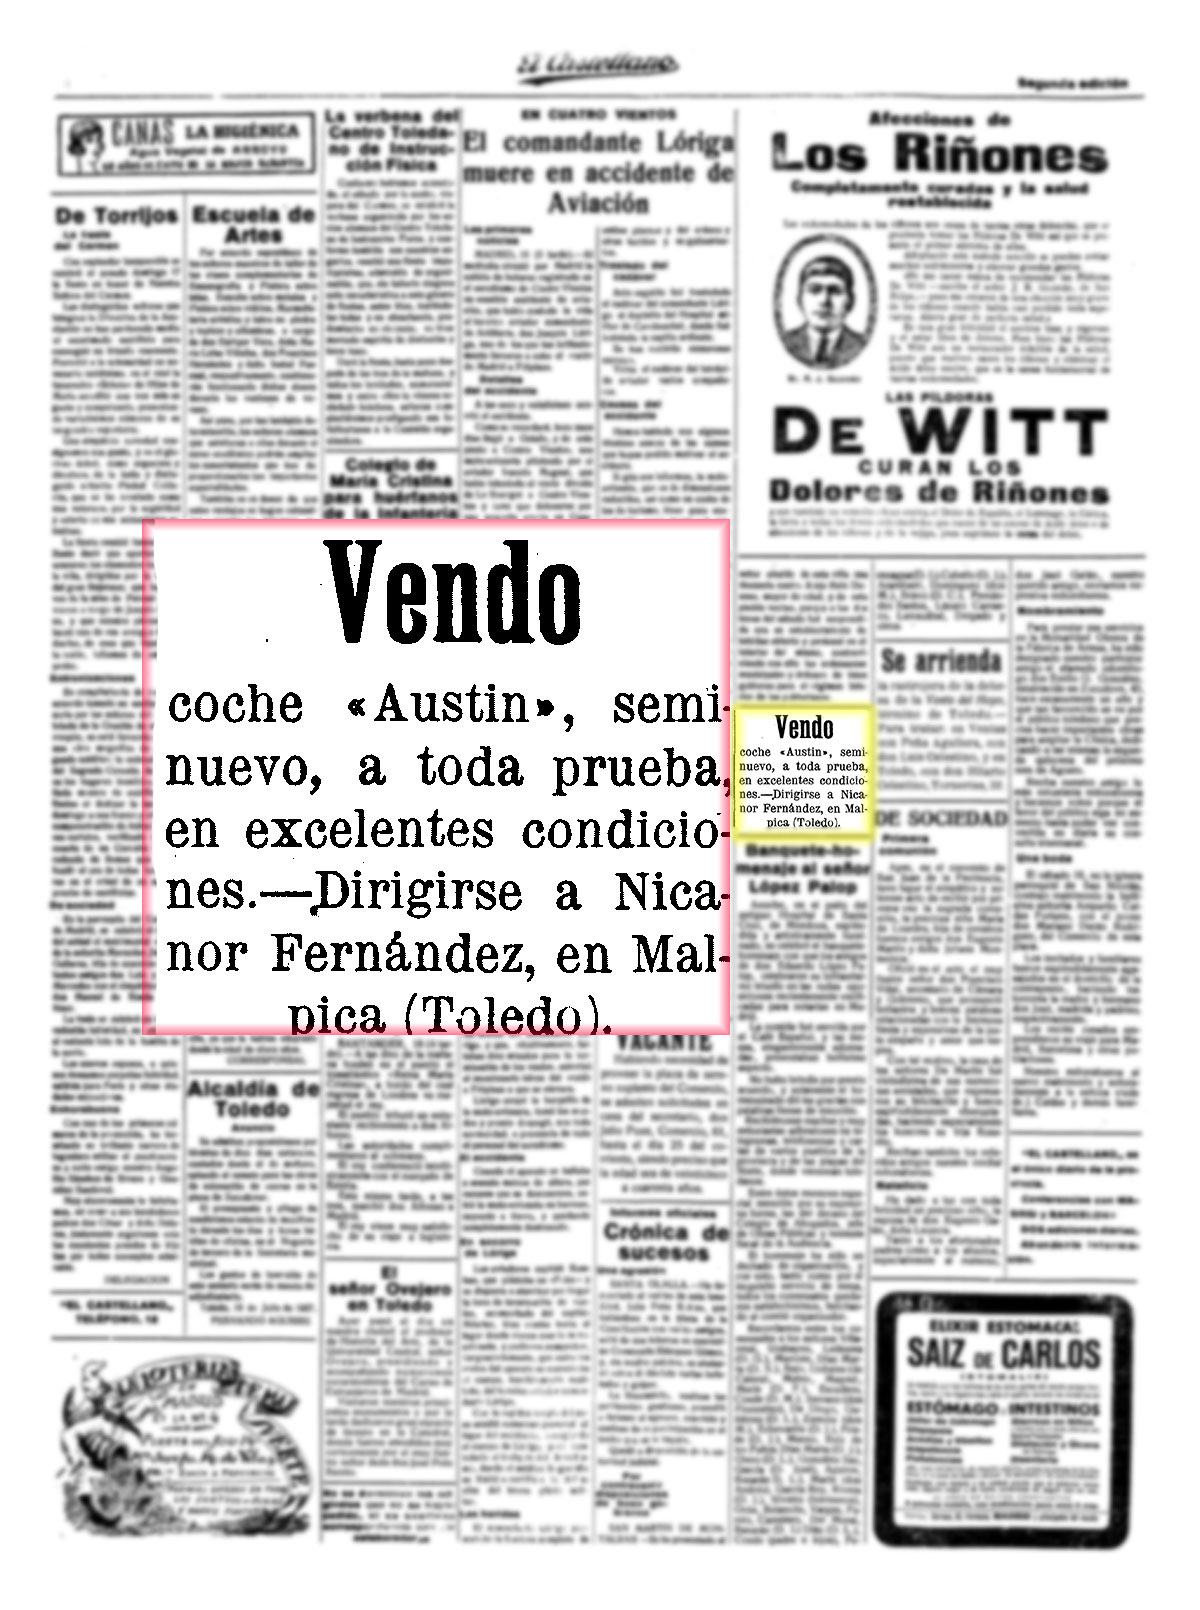 Venta de un Austin seminuevo. El Castellano, 18/07/1927, p 4